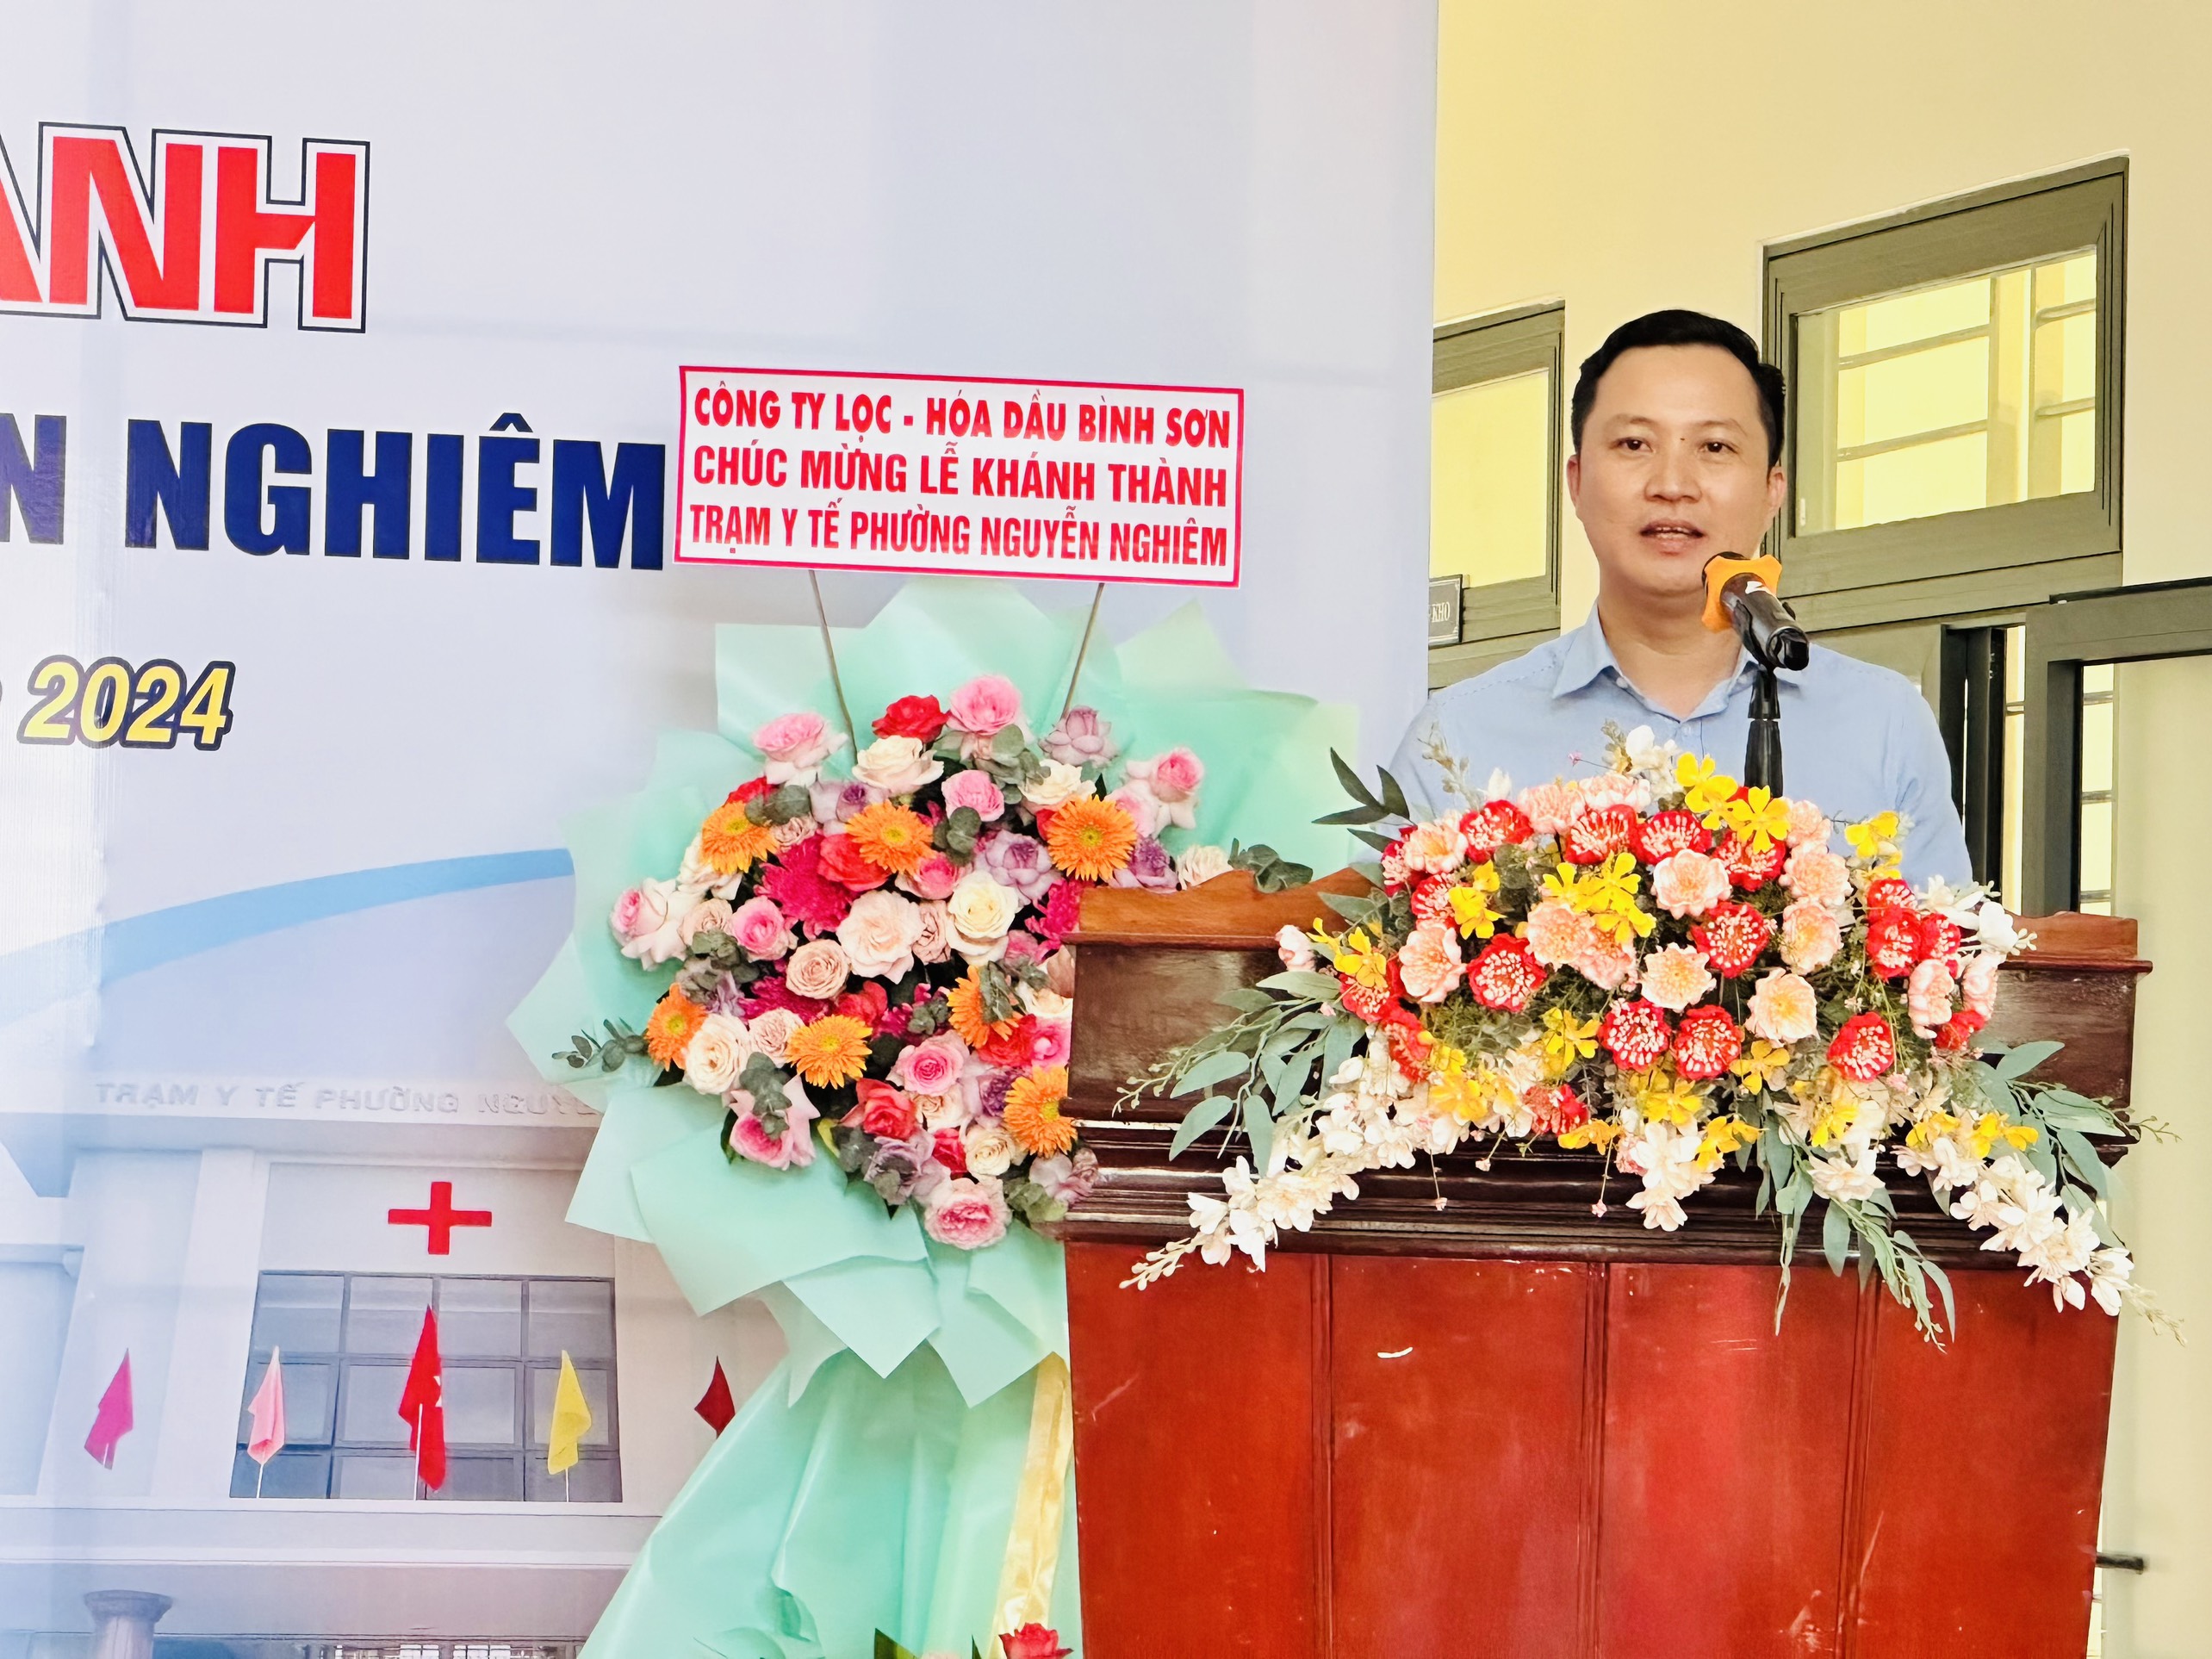 Khánh thành Trạm y tế phường Nguyễn Nghiêm do Công ty cổ phần Lọc hóa dầu Bình Sơn tài trợ